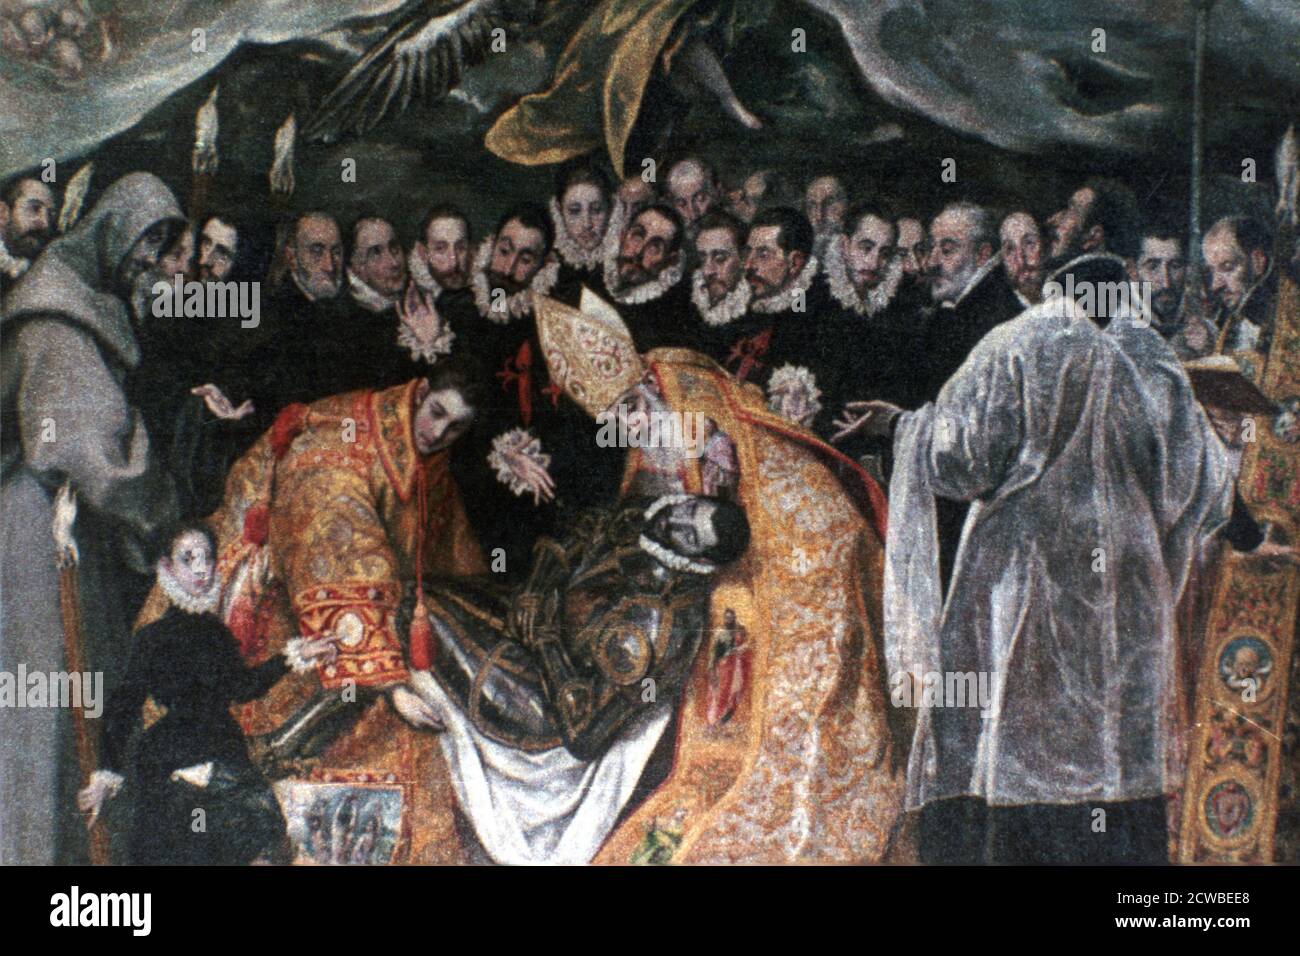 Le Burial du Comte Orgaz' (détail), 1586-1588. Artiste: El Greco. El Greco (1541-1614) est un peintre, sculpteur et architecte grec de la Renaissance espagnole. Banque D'Images